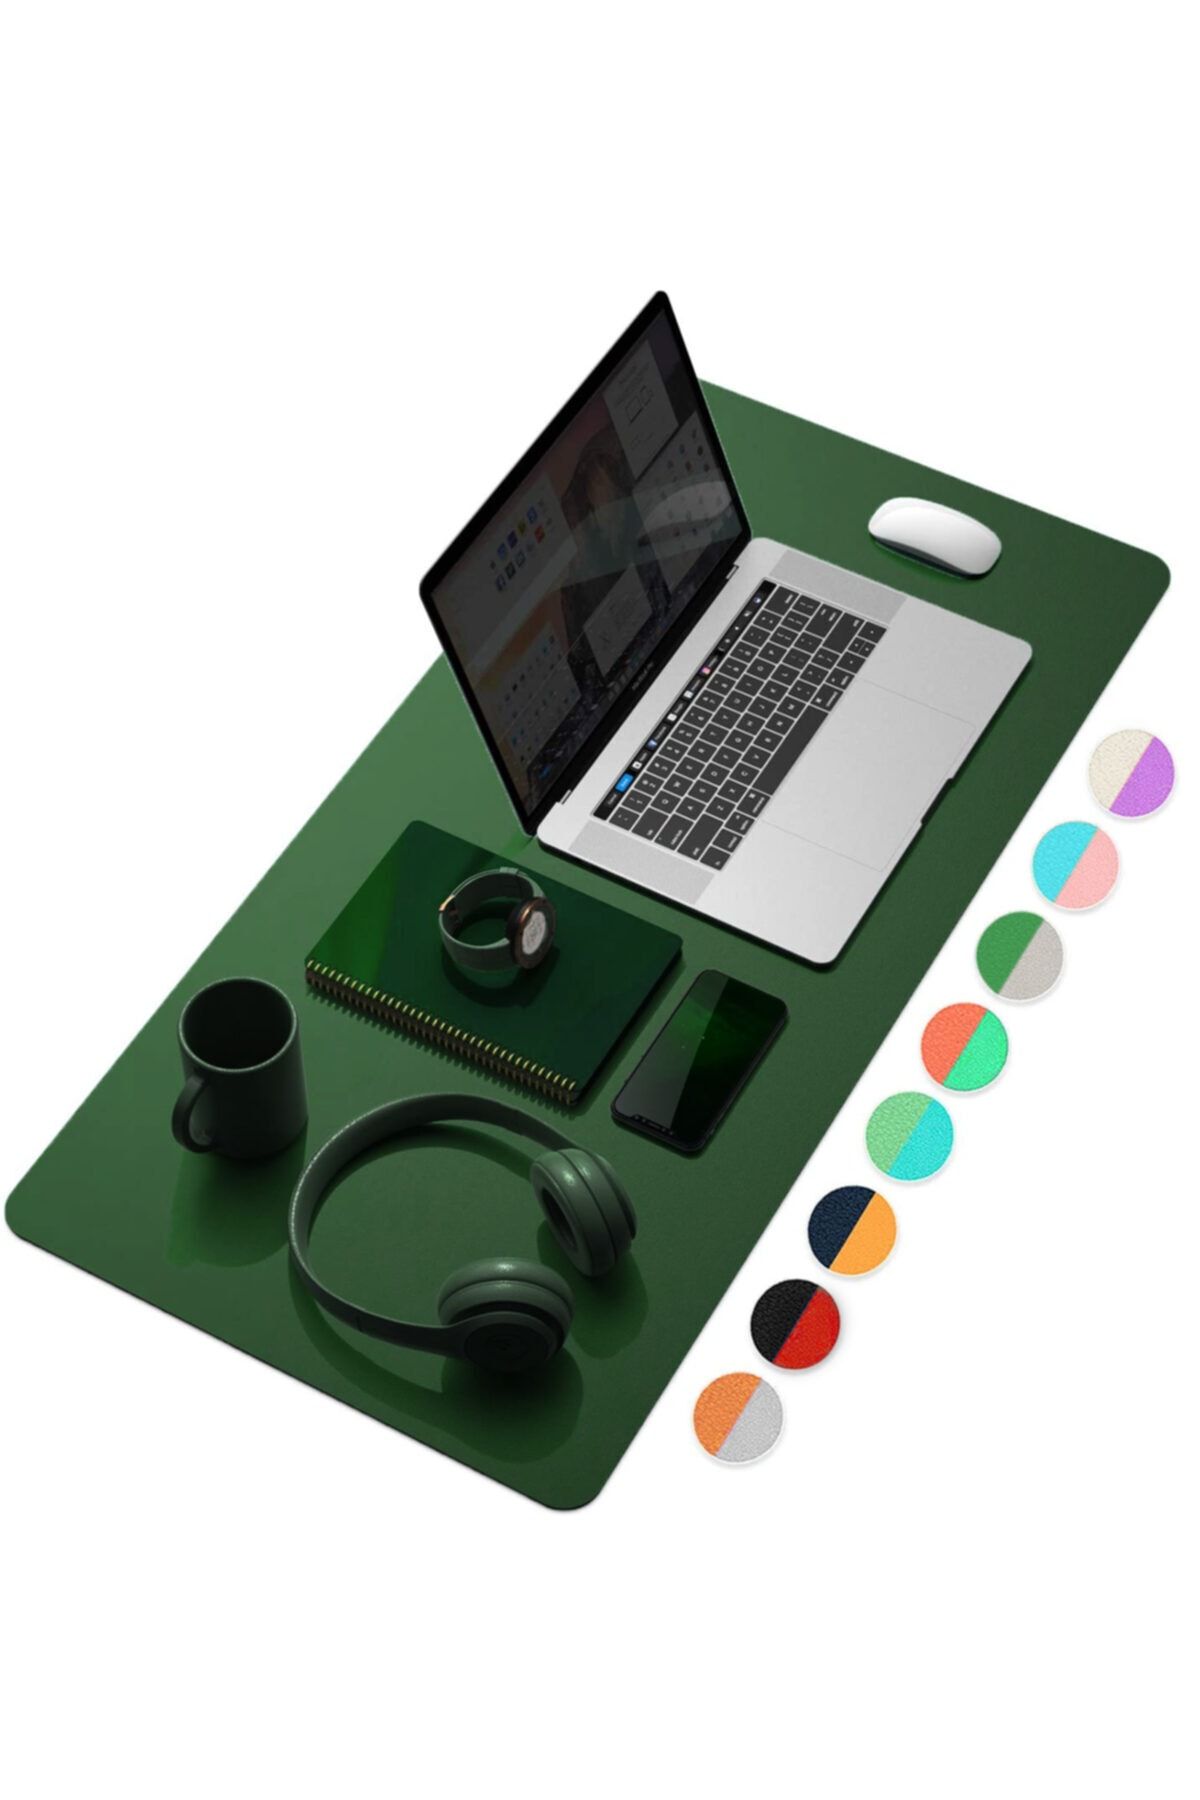 Xrades Çift Renk Deri Mousepad Laptop Bilgisayar Için 80x40 Cm Yeşil Ve Gri